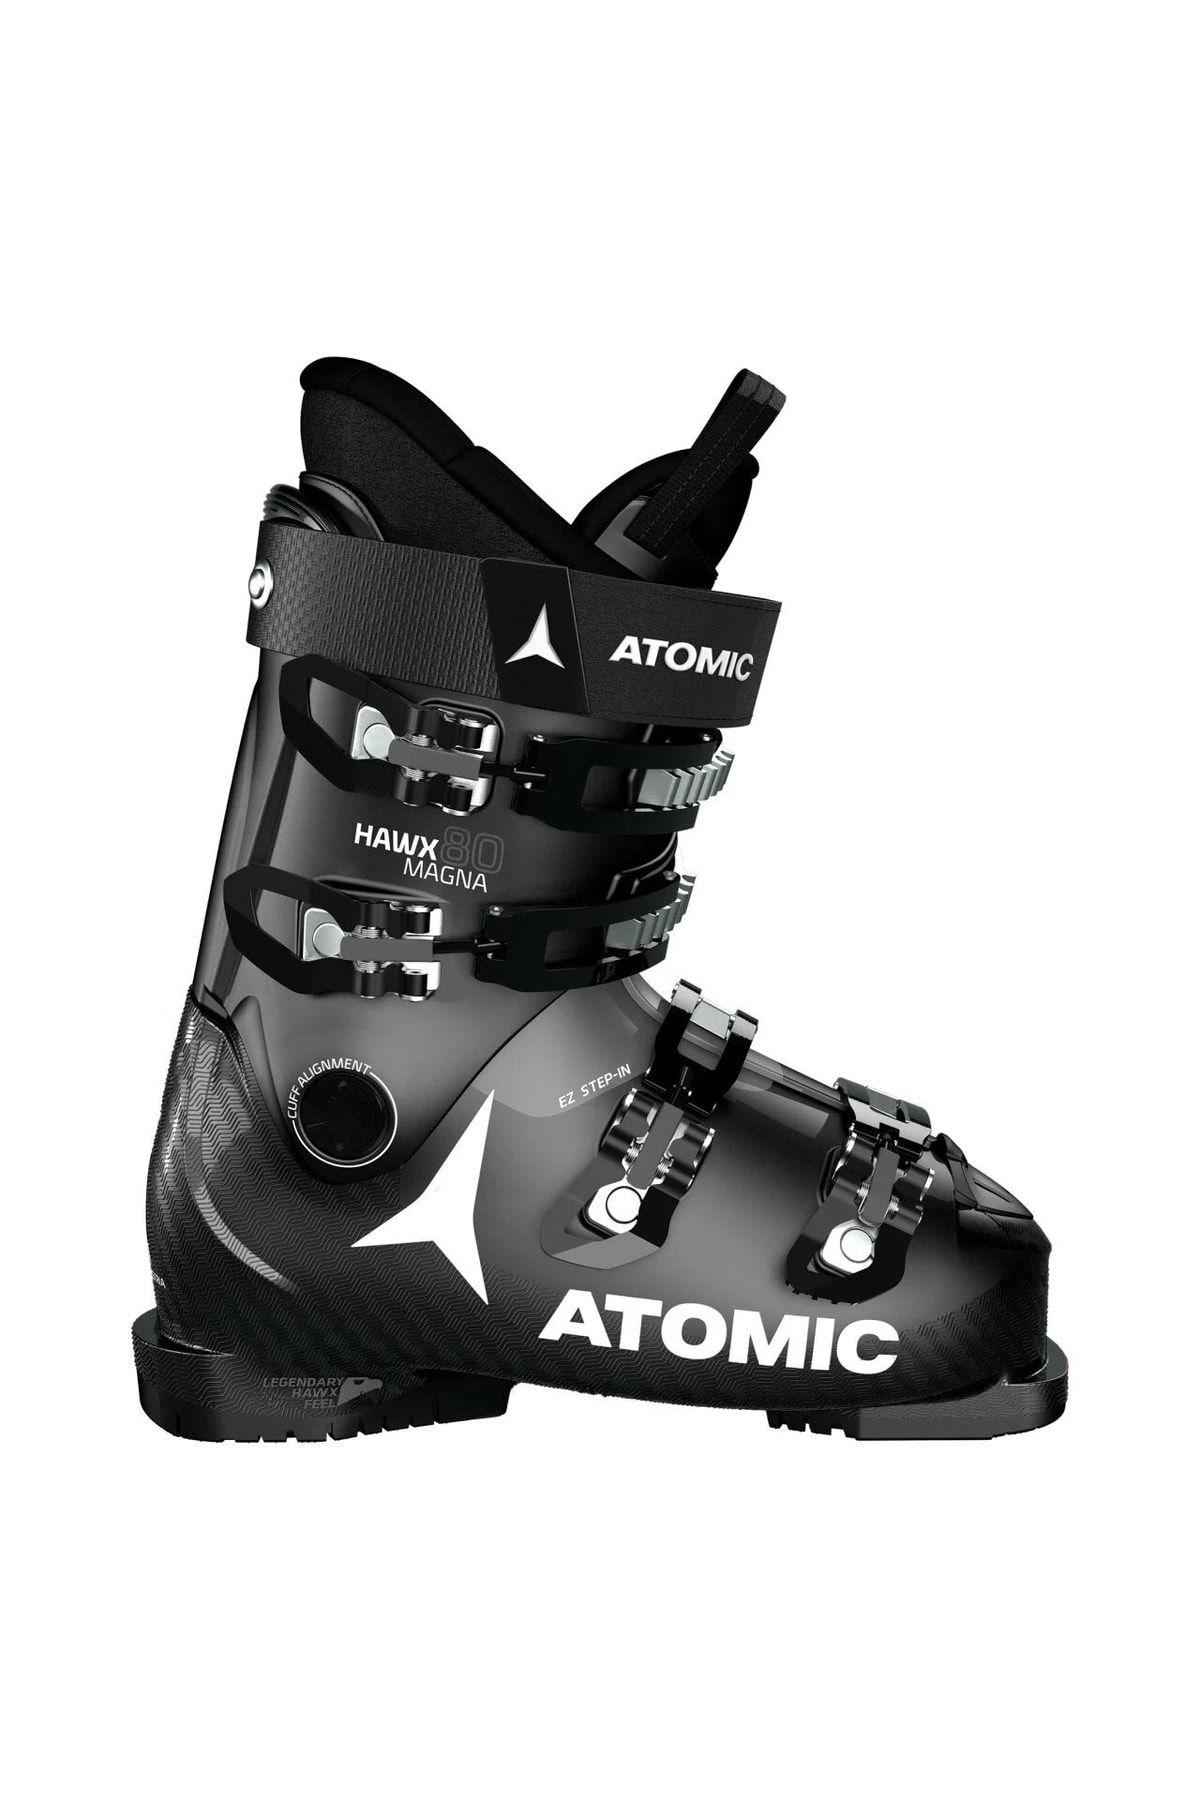 Atomic Hawx Magna 80 Black Anthracite Kayak Ayakkabısı